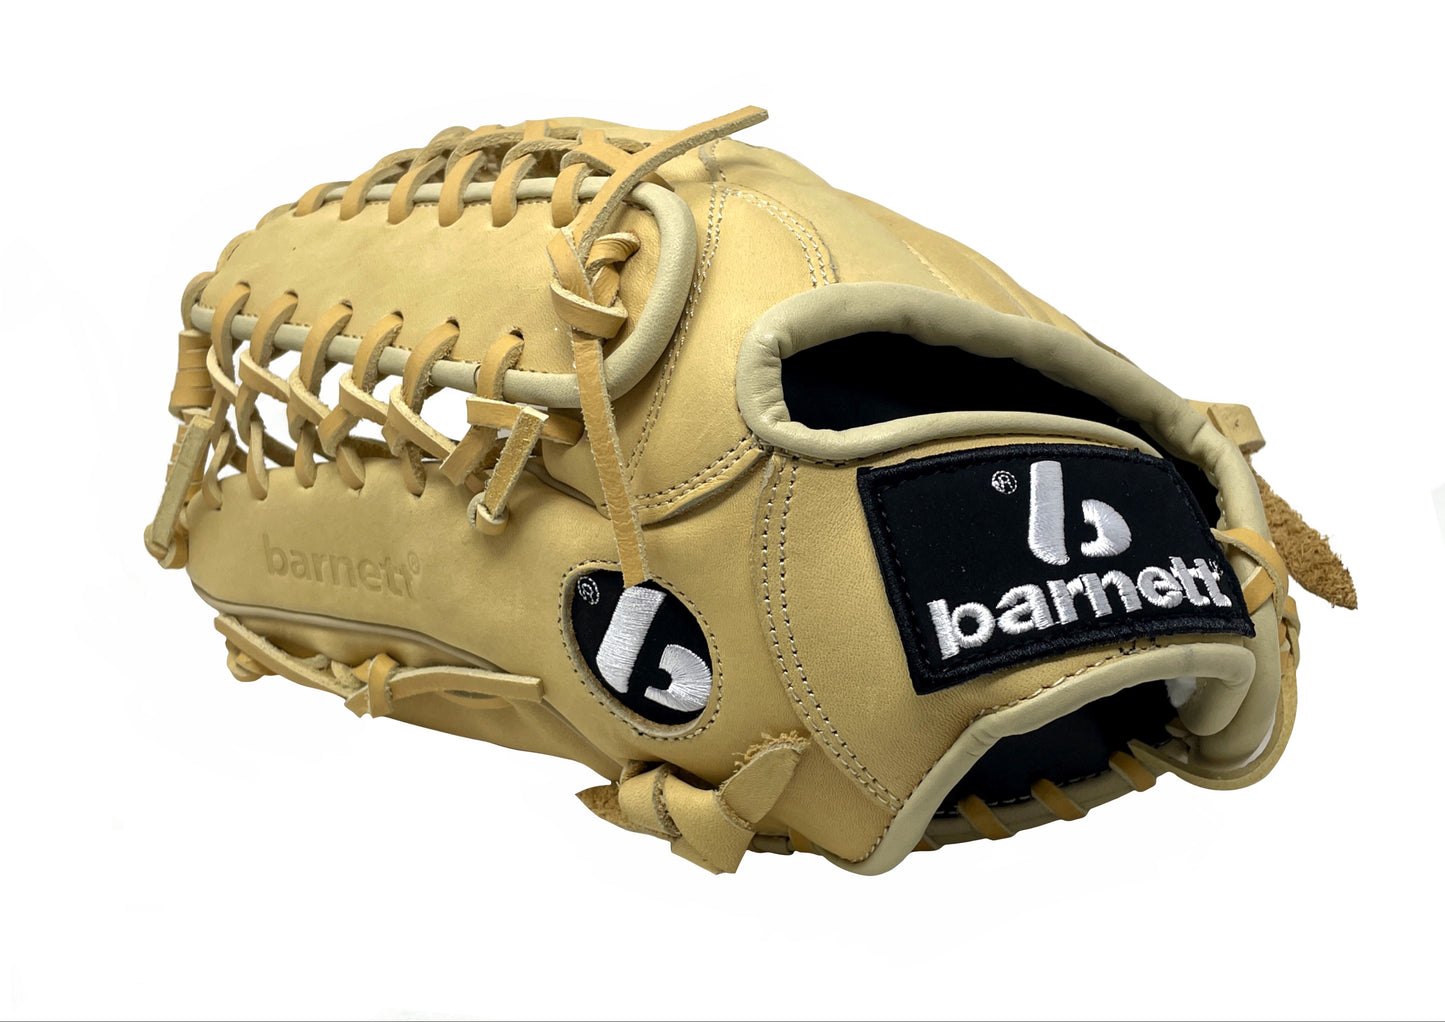 FL-127 Vysoce kvalitní kožené ba0seballové rukavice infield /outfield /pitcher, béžová